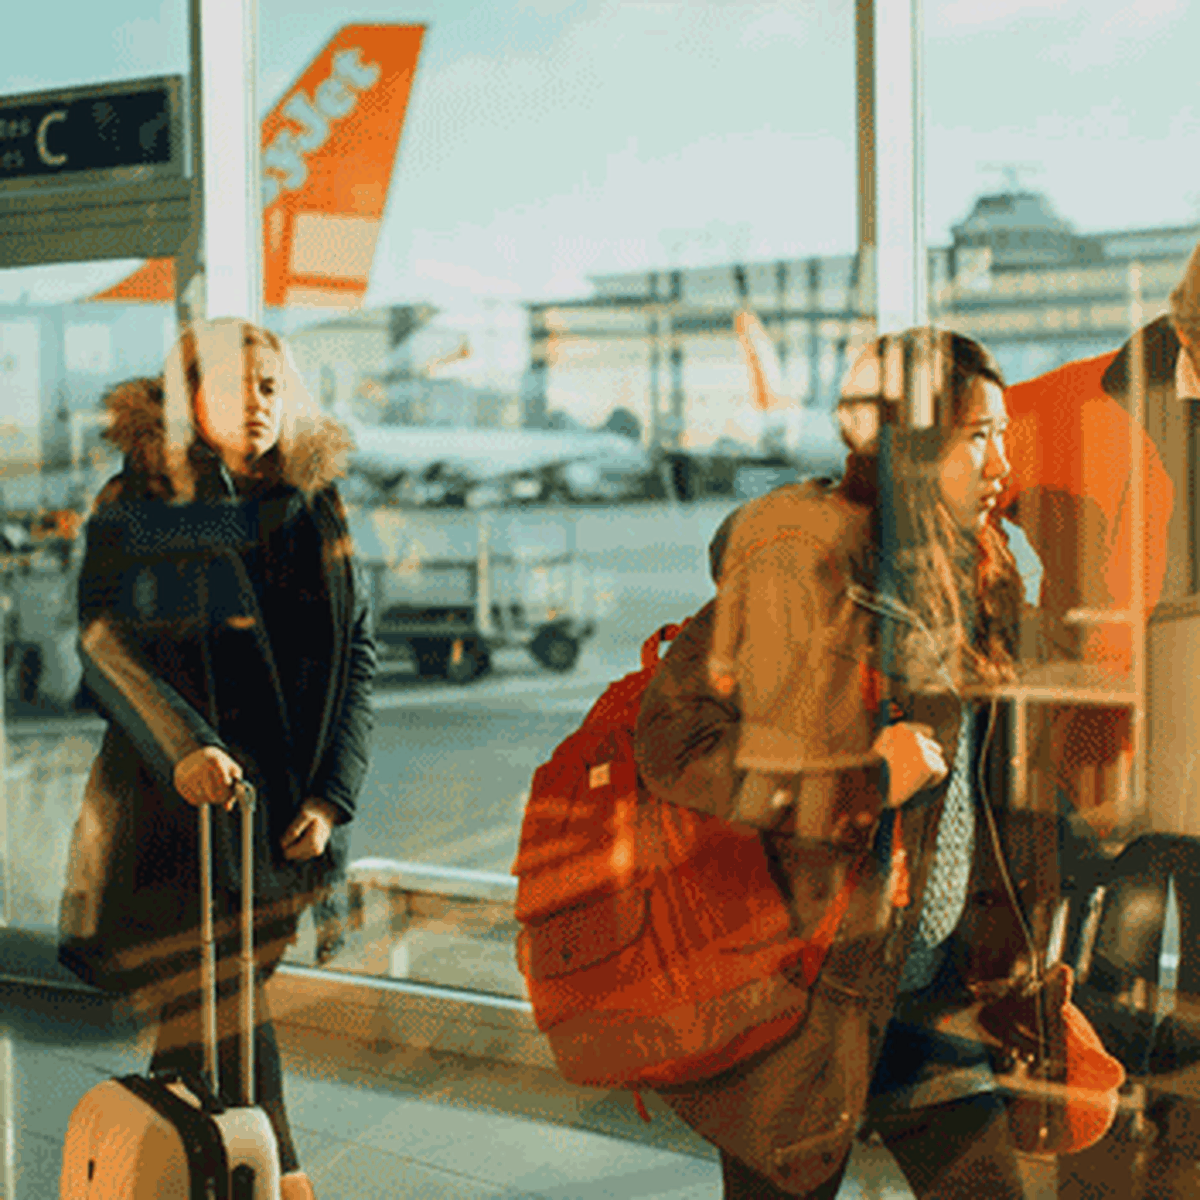 TheWonderTrip  Nueva política de maleta en cabina de Ryanair - Blog,  Consejos